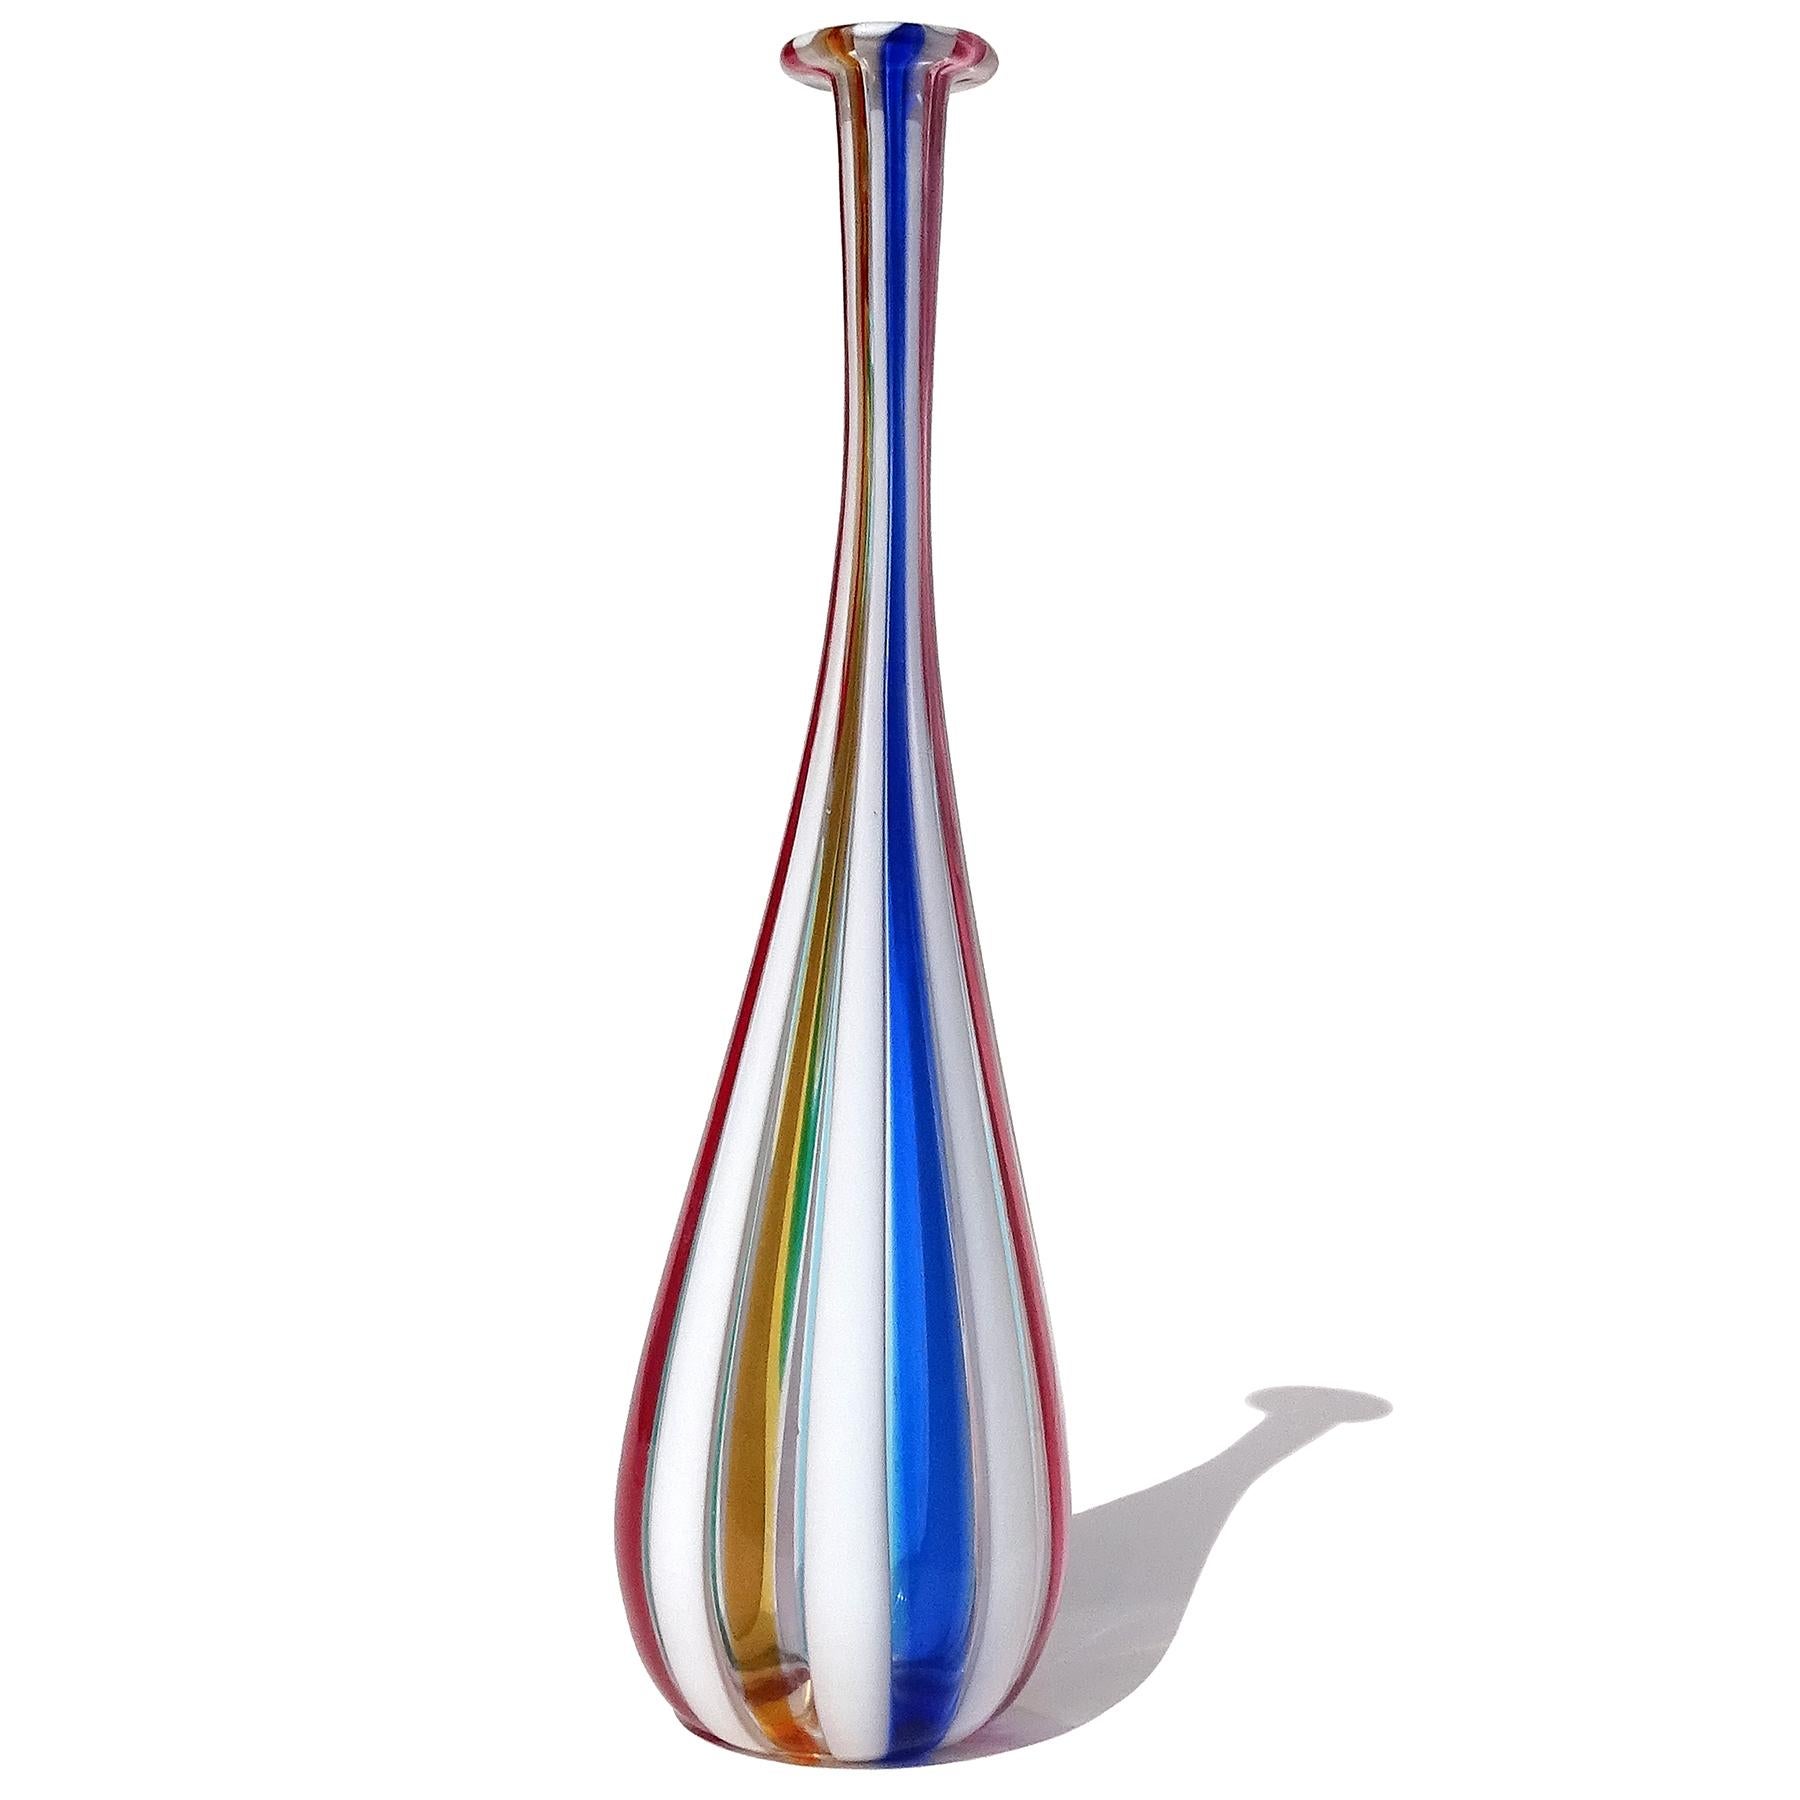 Schöne Vintage Murano mundgeblasen mehrfarbige vertikale Streifen italienische Kunst Glas Soliflores / specimen Blumenvase. Die Vase hat einen Regenbogen von Farben, mit kobaltblau, himmelblau, leuchtend rot, rosa, amethyst, leuchtend gelb orange